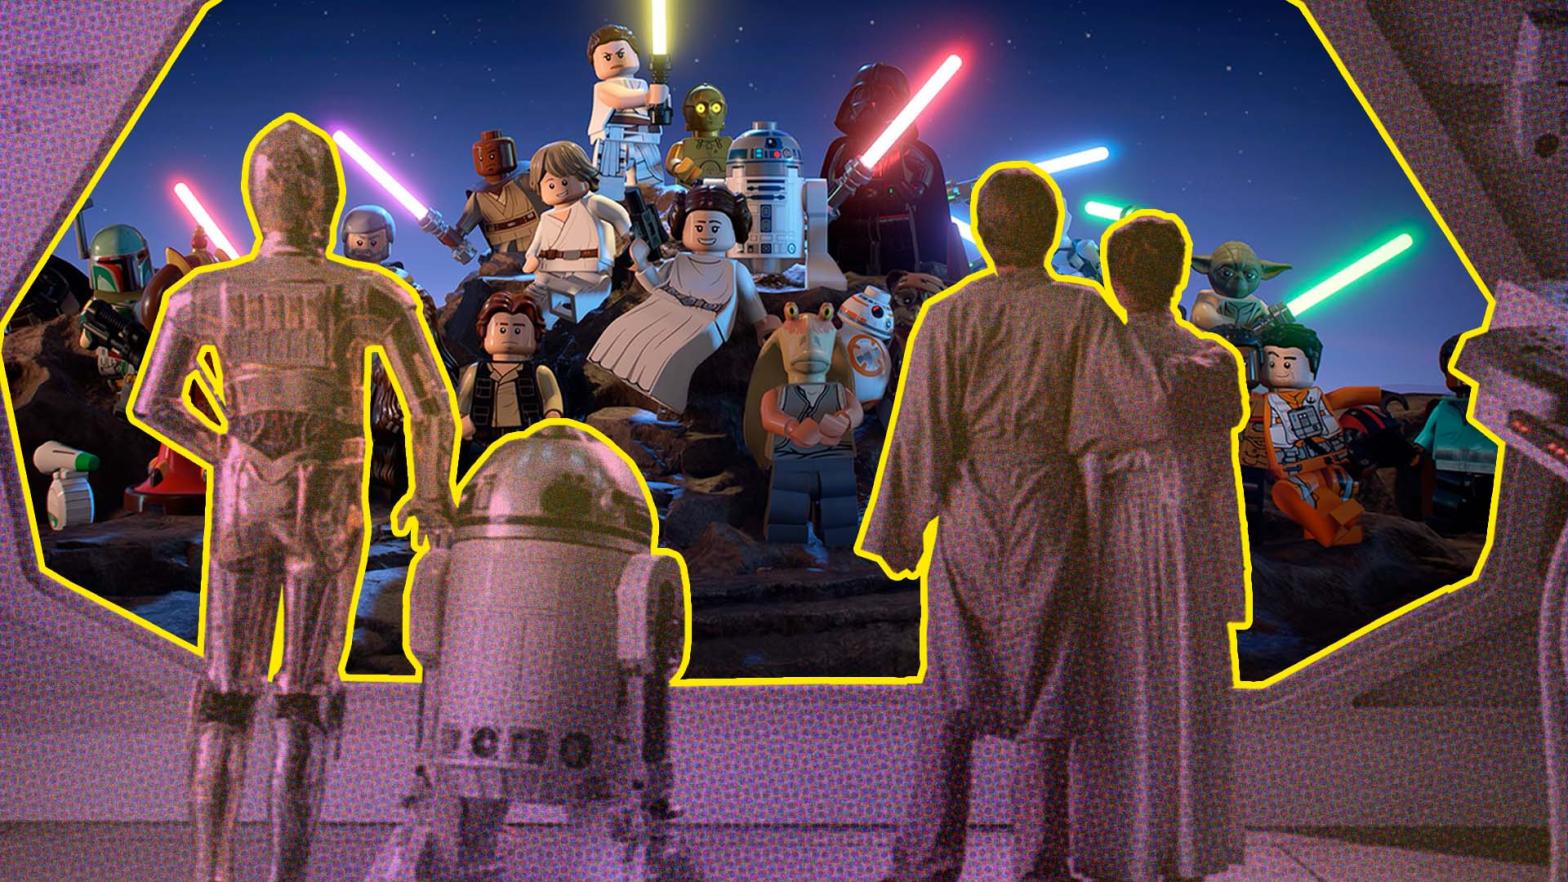 Image: Lucasfilm / Disney / Kotaku